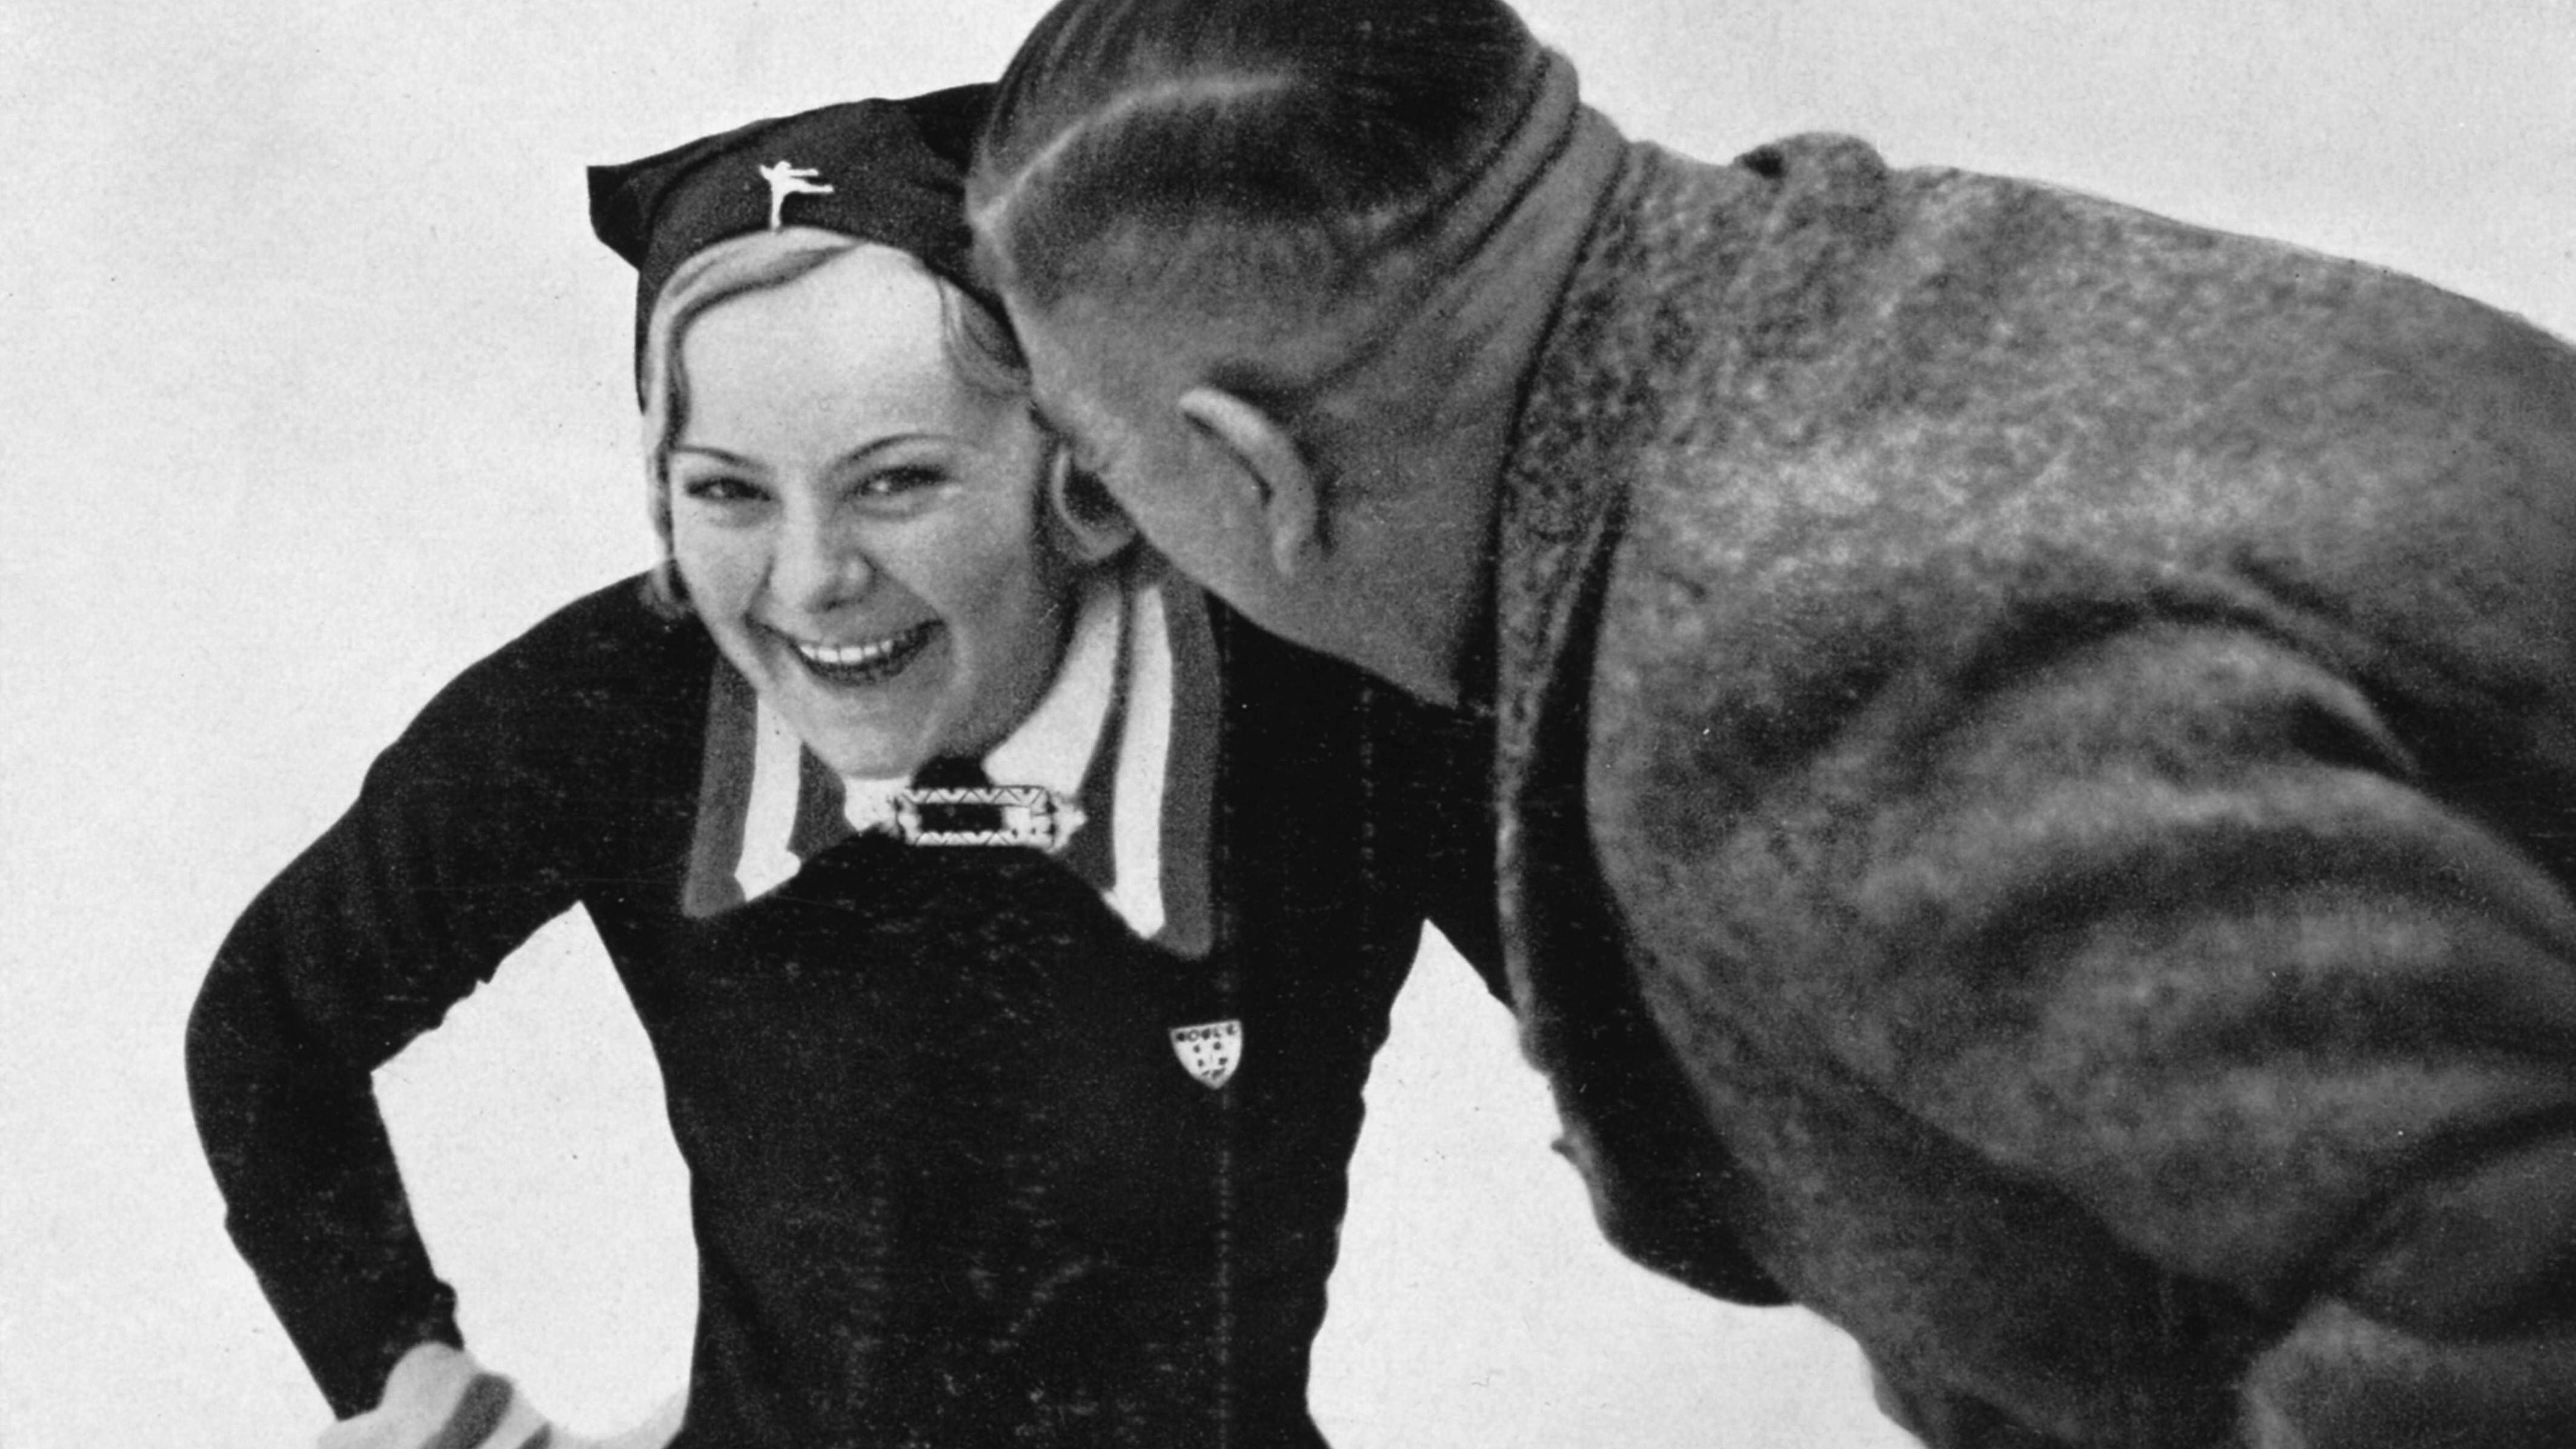 <strong>Sonja Henie</strong><br>Die erfolgreichste Eiskunstläuferin der Geschichte ist bei ihrer Olympia-Premiere ein Kind. 1924 geht Henie mit elf Jahren an den Start und wird Letzte. Danach ist die Norwegerin unschlagbar und gewinnt dreimal Olympia- sowie zehnmal WM-Gold. Henie startet später als Schauspielerin in Hollywood durch - und stirbt 1964 auf tragische Weise bei einem Flugzeugabsturz.